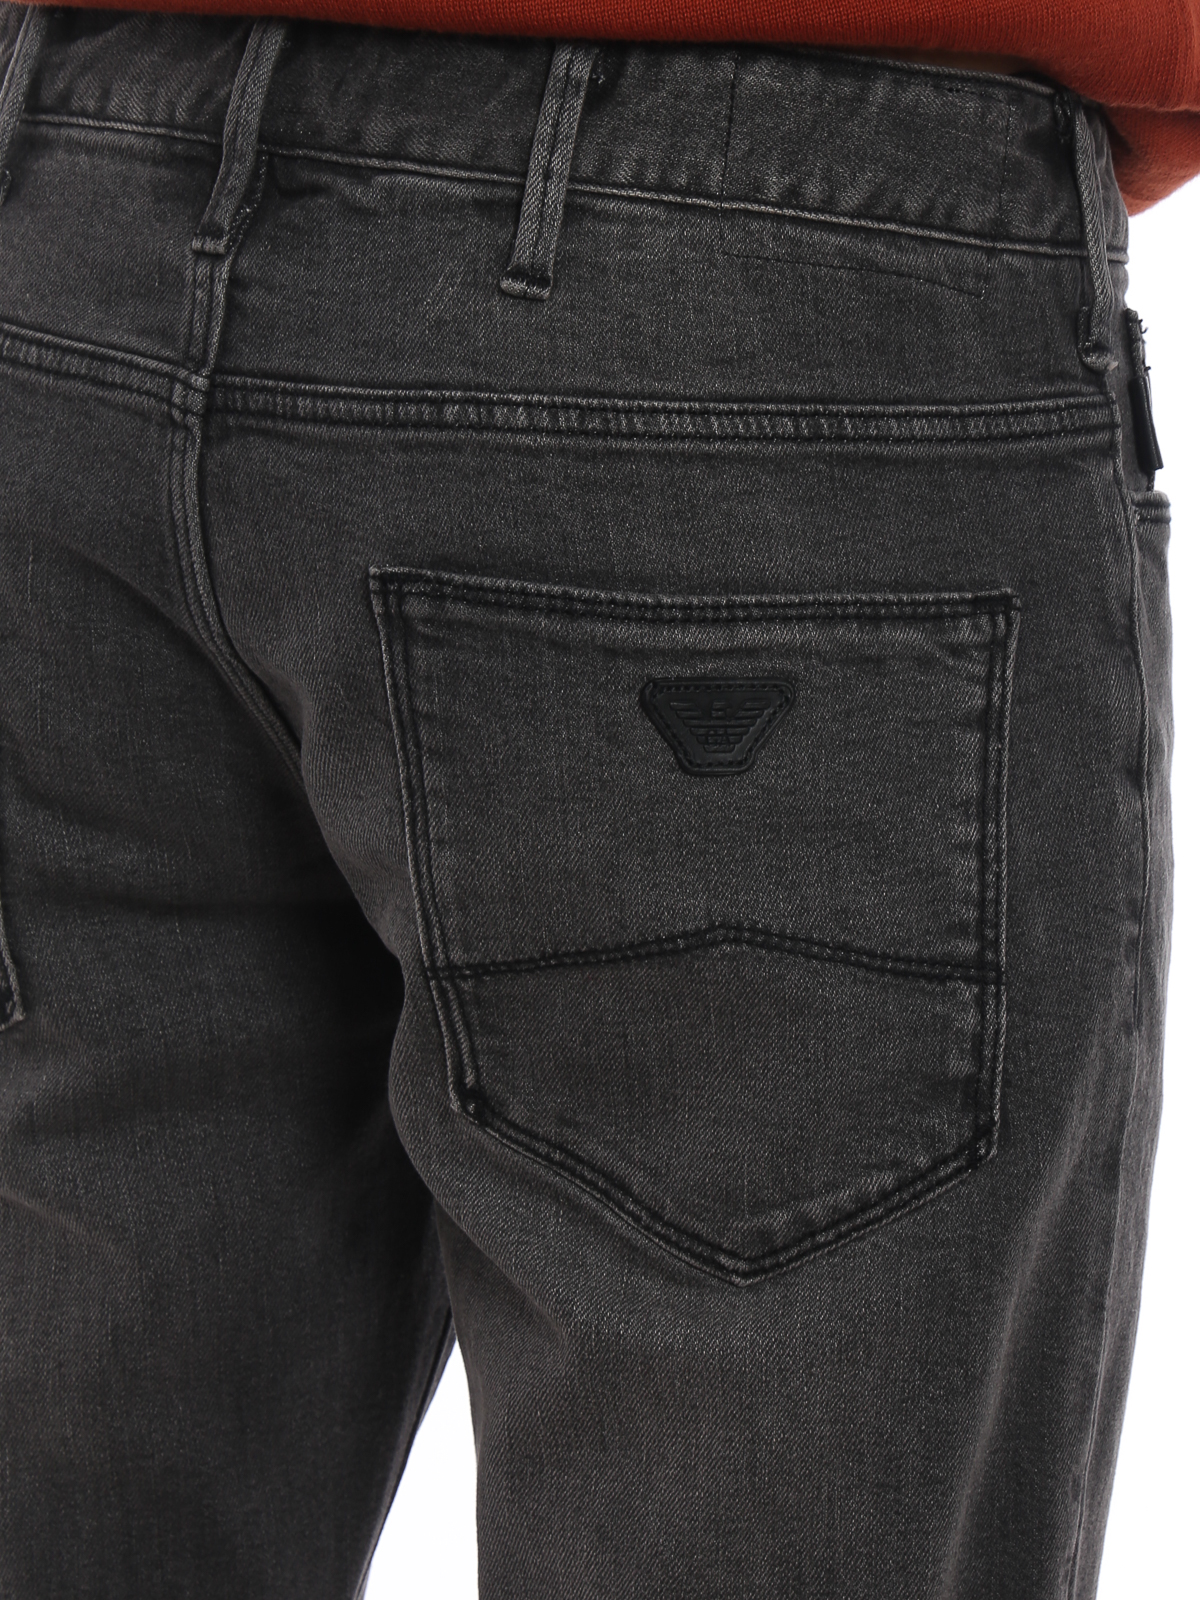 Skinny jeans Emporio Armani - Stone washed grey jeans - 6Z1J1061DUBZ006